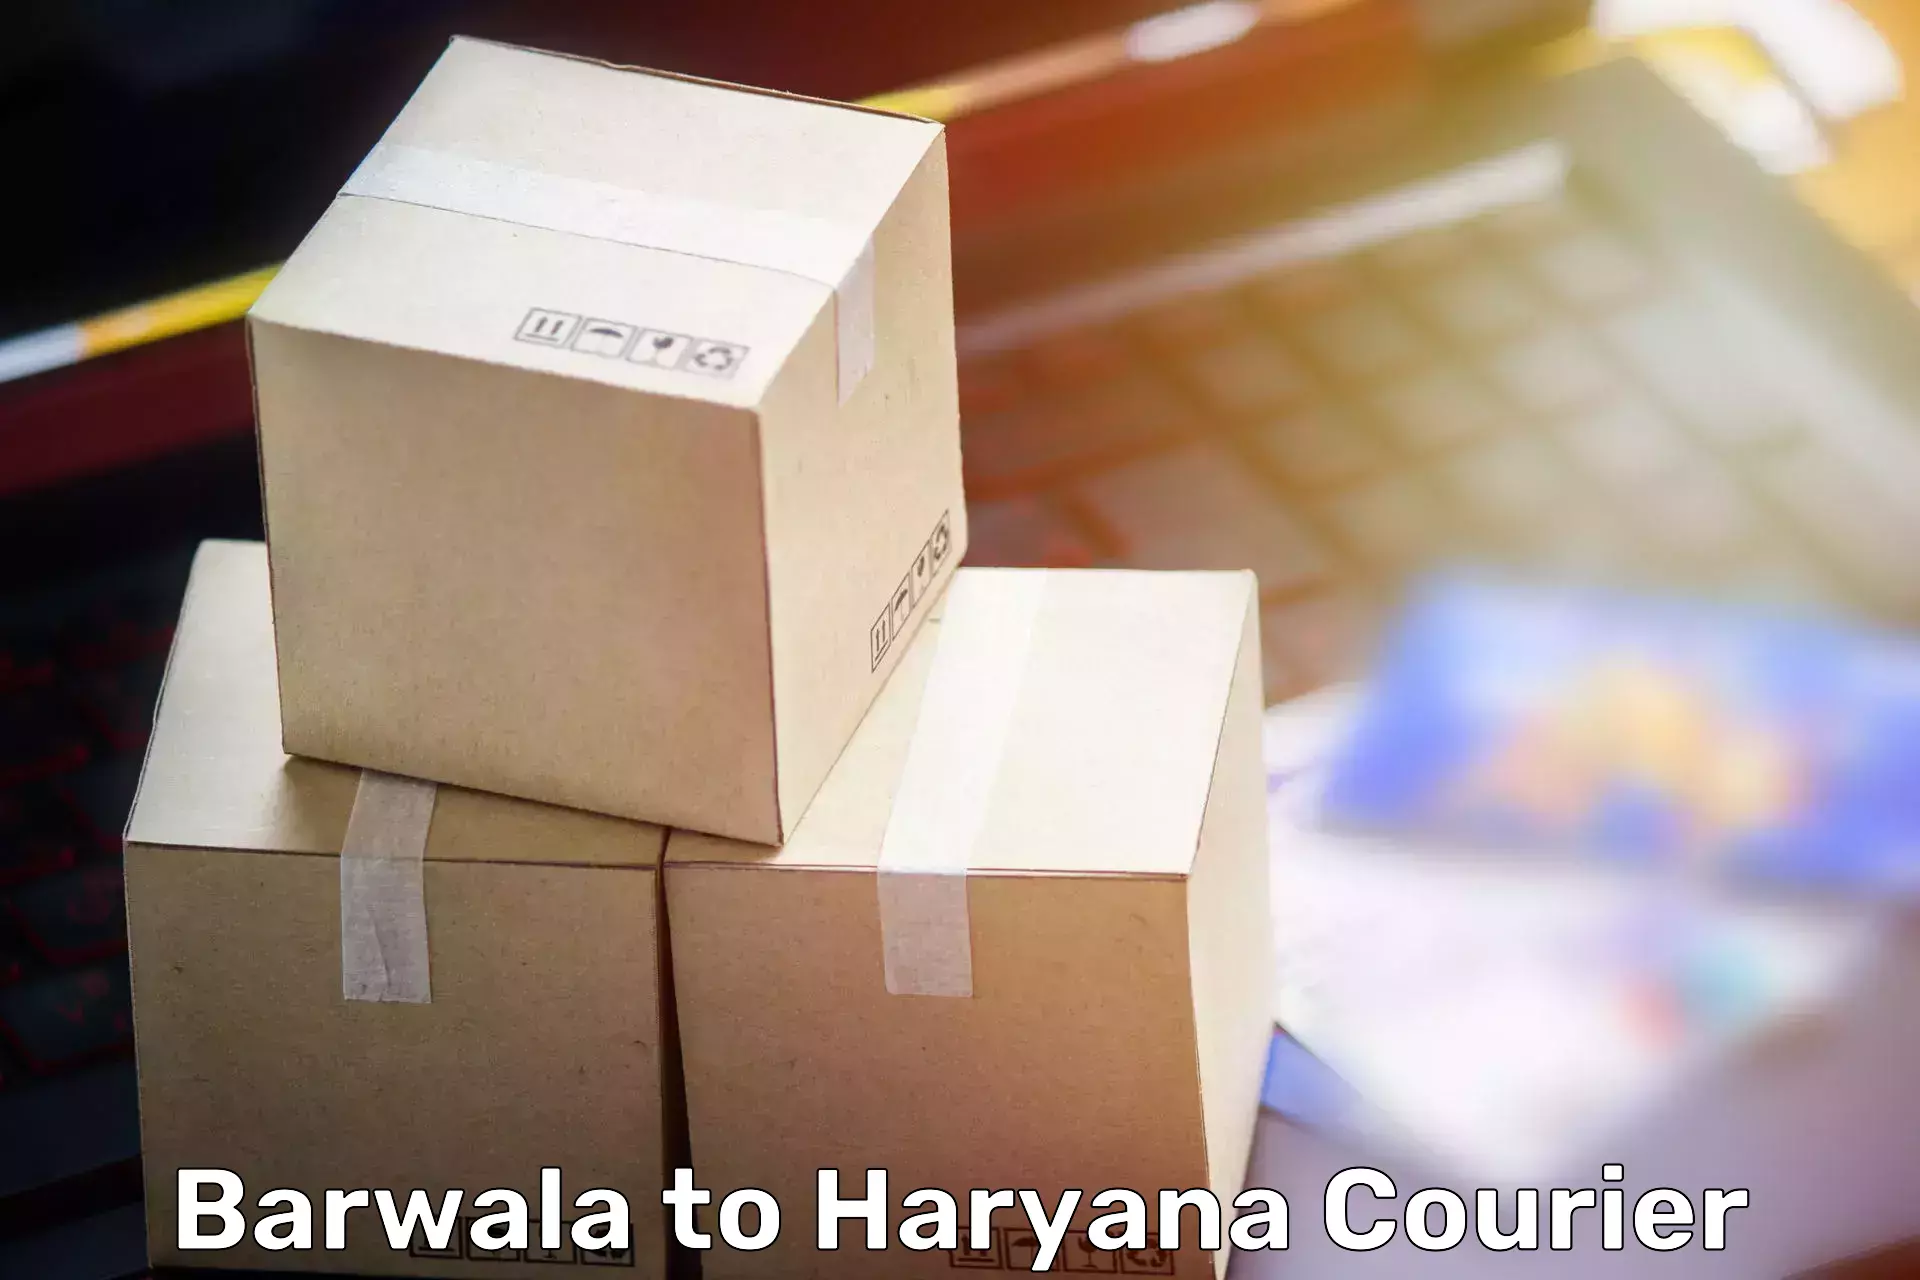 Nationwide furniture movers Barwala to Hansi